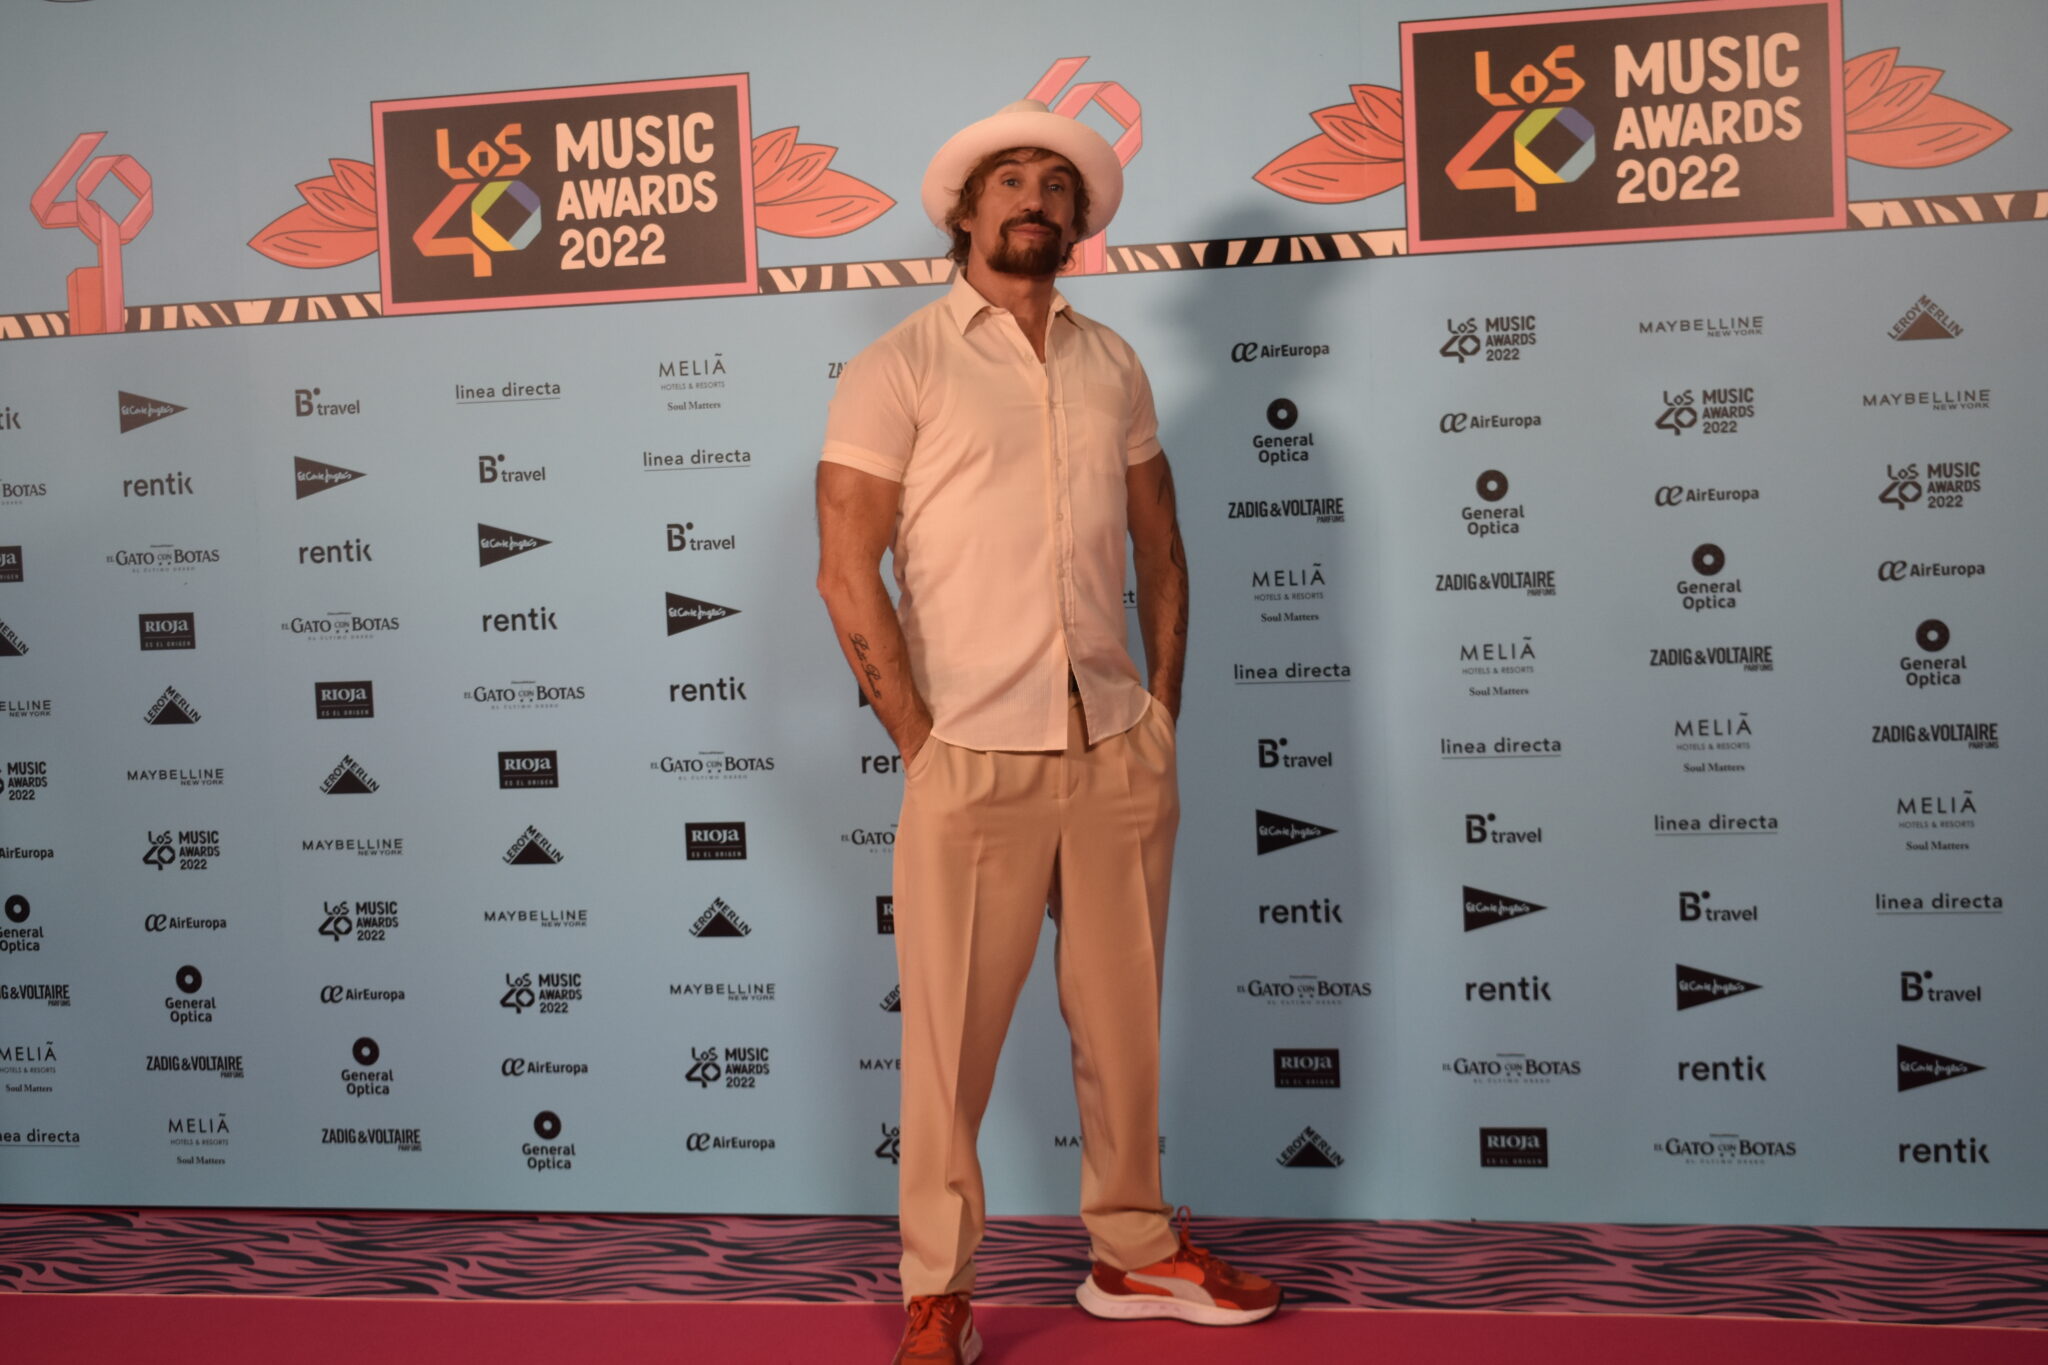 Macaco en Los40 Music Awards 2022 | Foto: Bea Cano